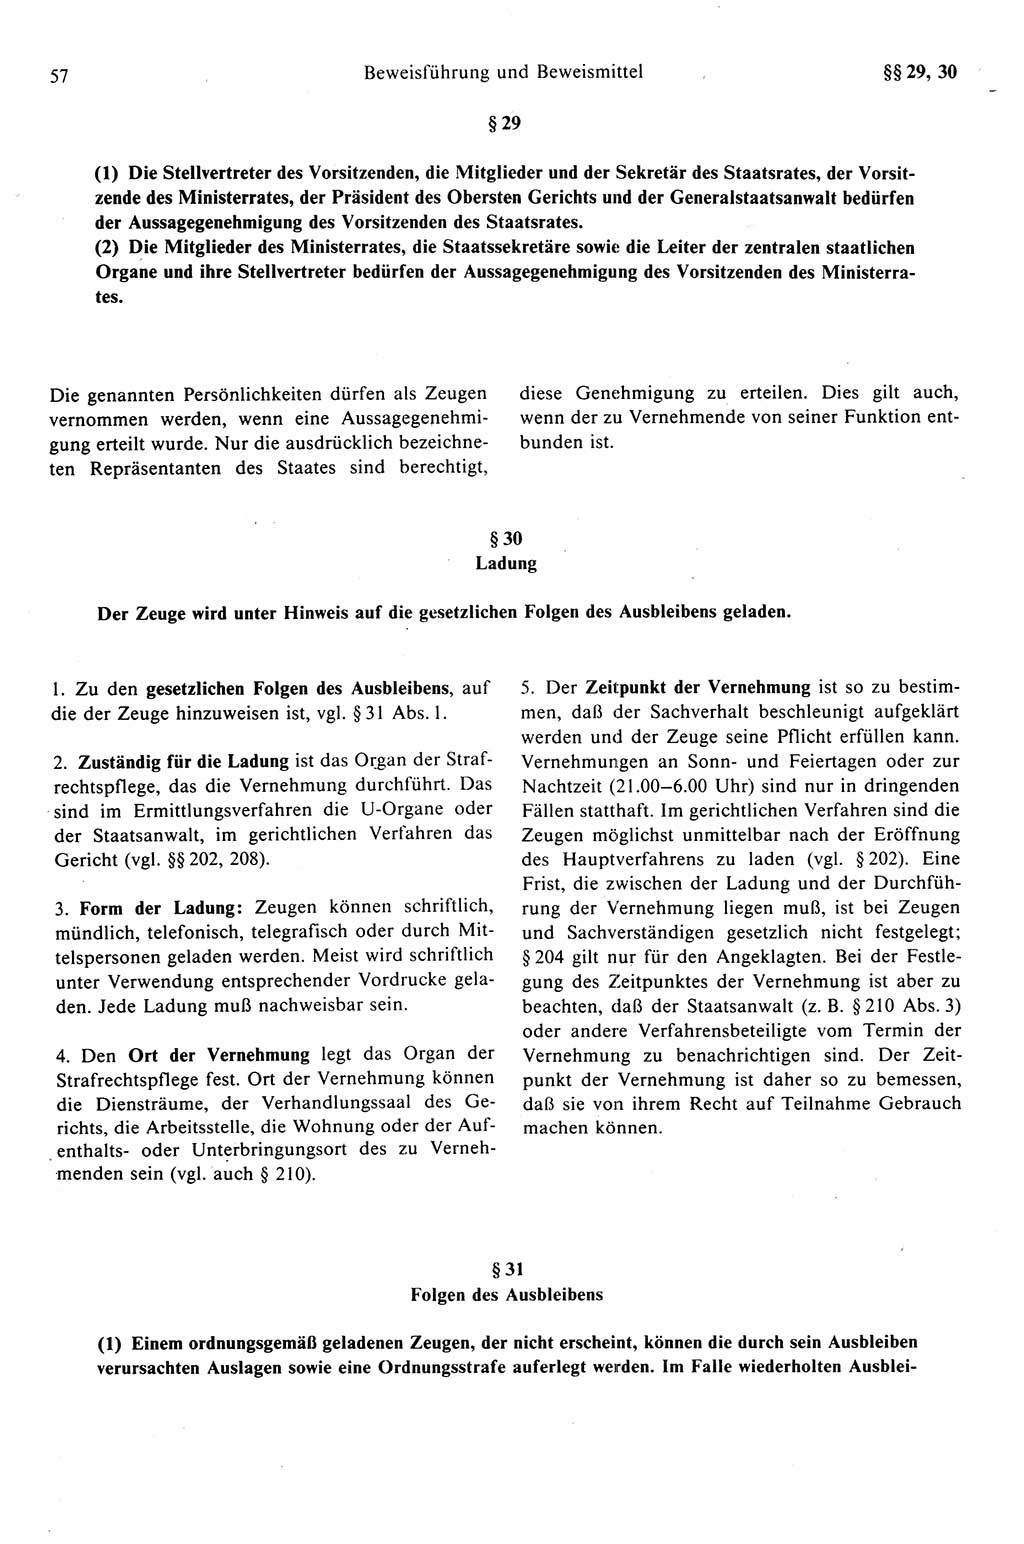 Strafprozeßrecht der DDR (Deutsche Demokratische Republik), Kommentar zur Strafprozeßordnung (StPO) 1989, Seite 57 (Strafprozeßr. DDR Komm. StPO 1989, S. 57)